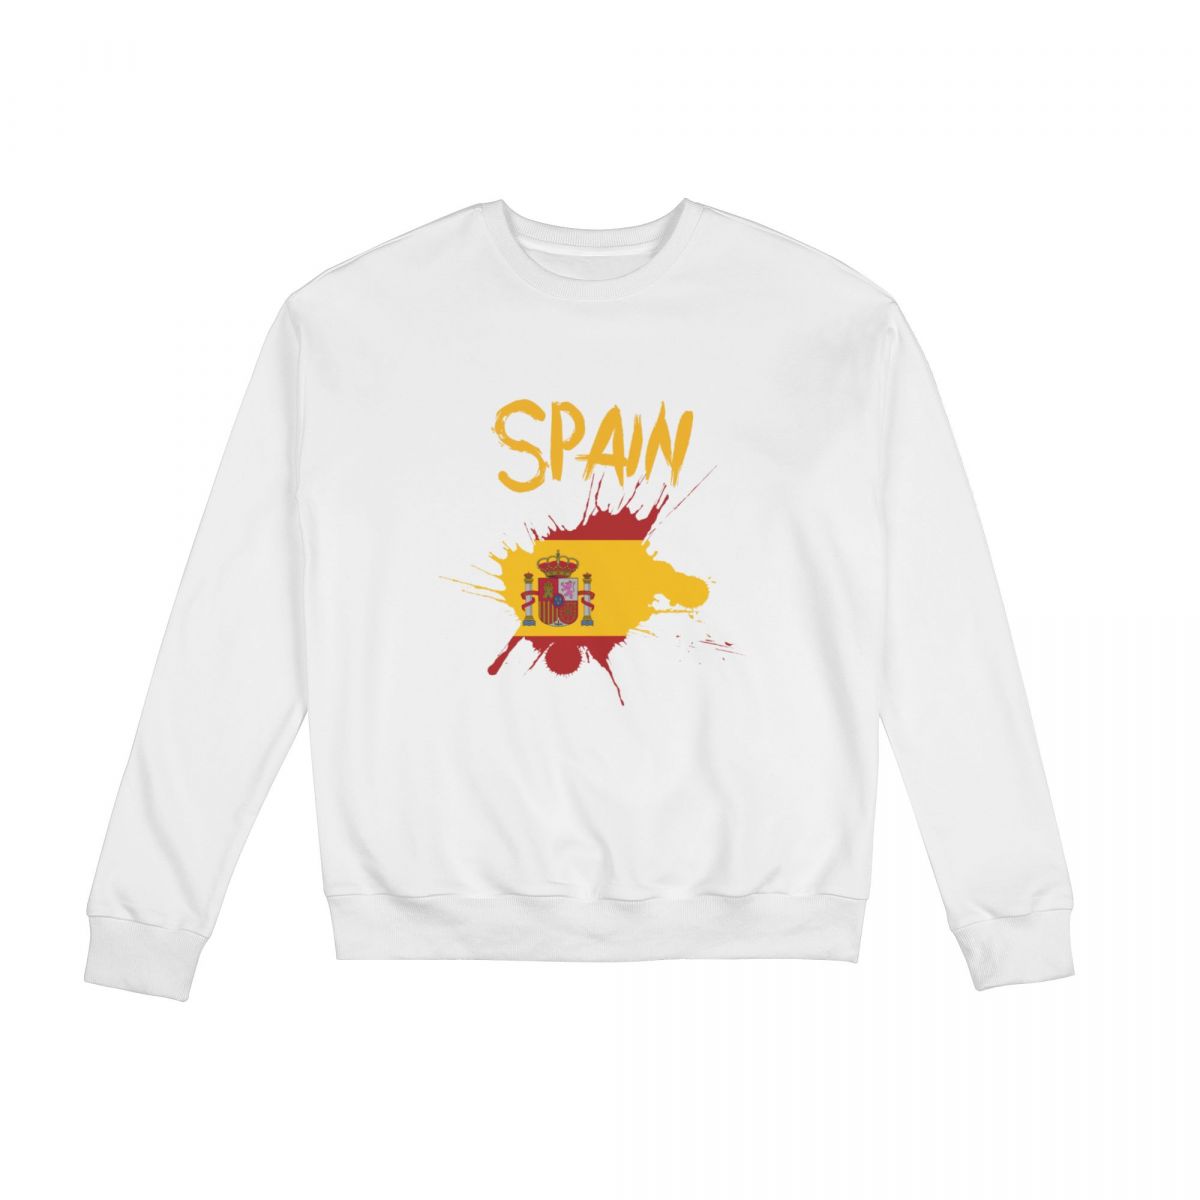 Spain Ink Spatter Sweatshirt Round Neck Tops